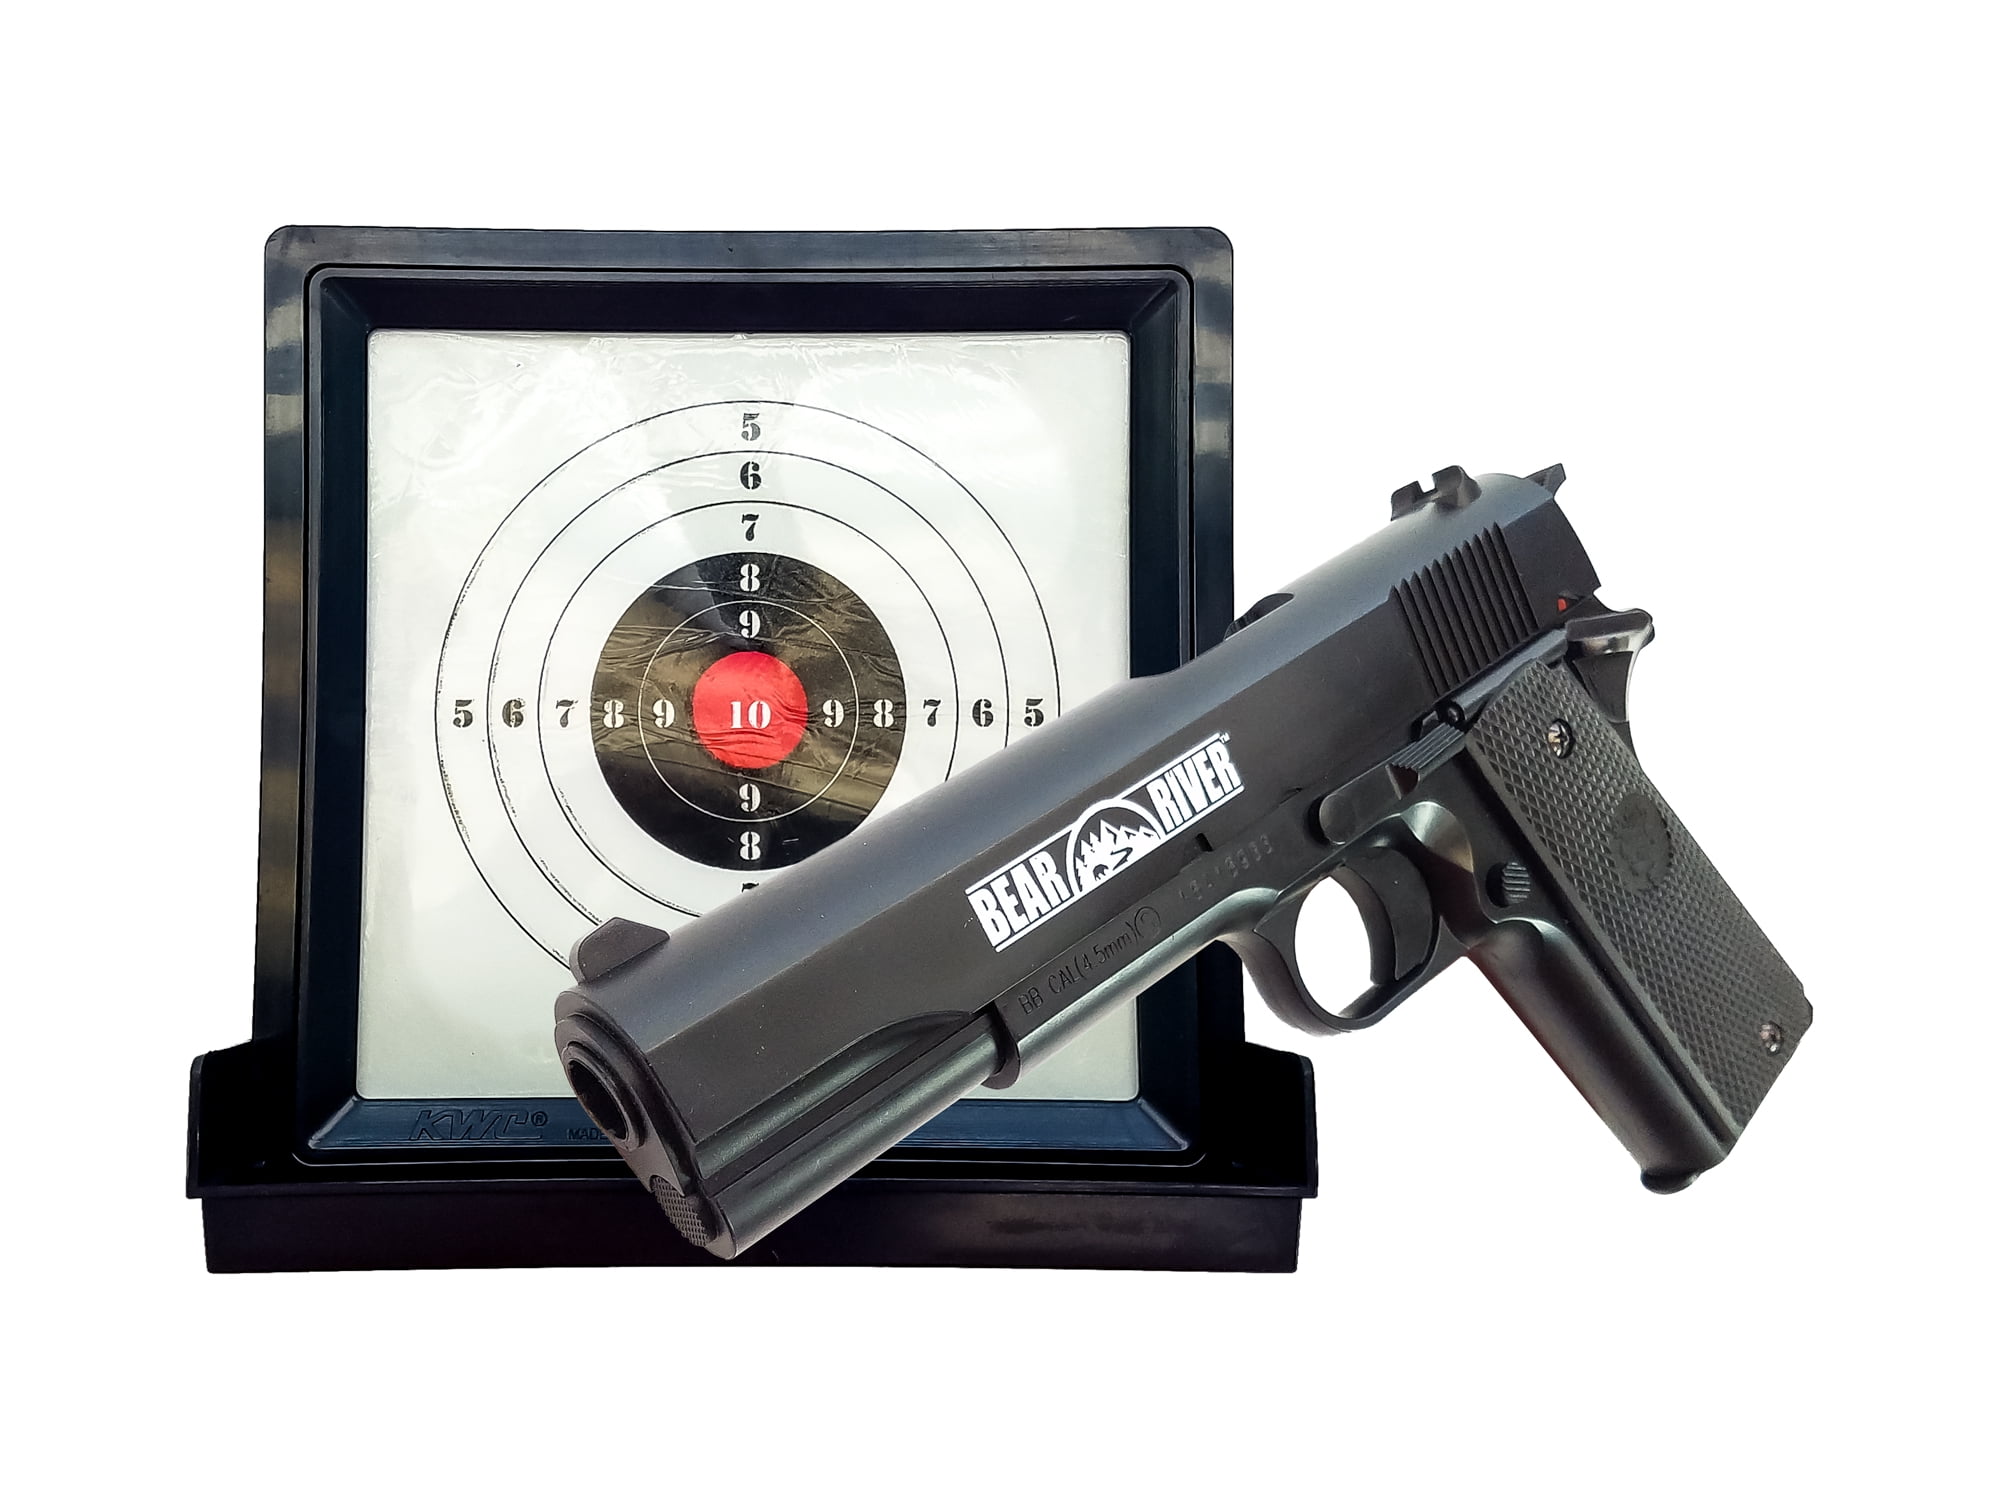 SHOOT LIKE A GIRL If you can PISTOL handgun target 1911 Outdoor Decal sticker 